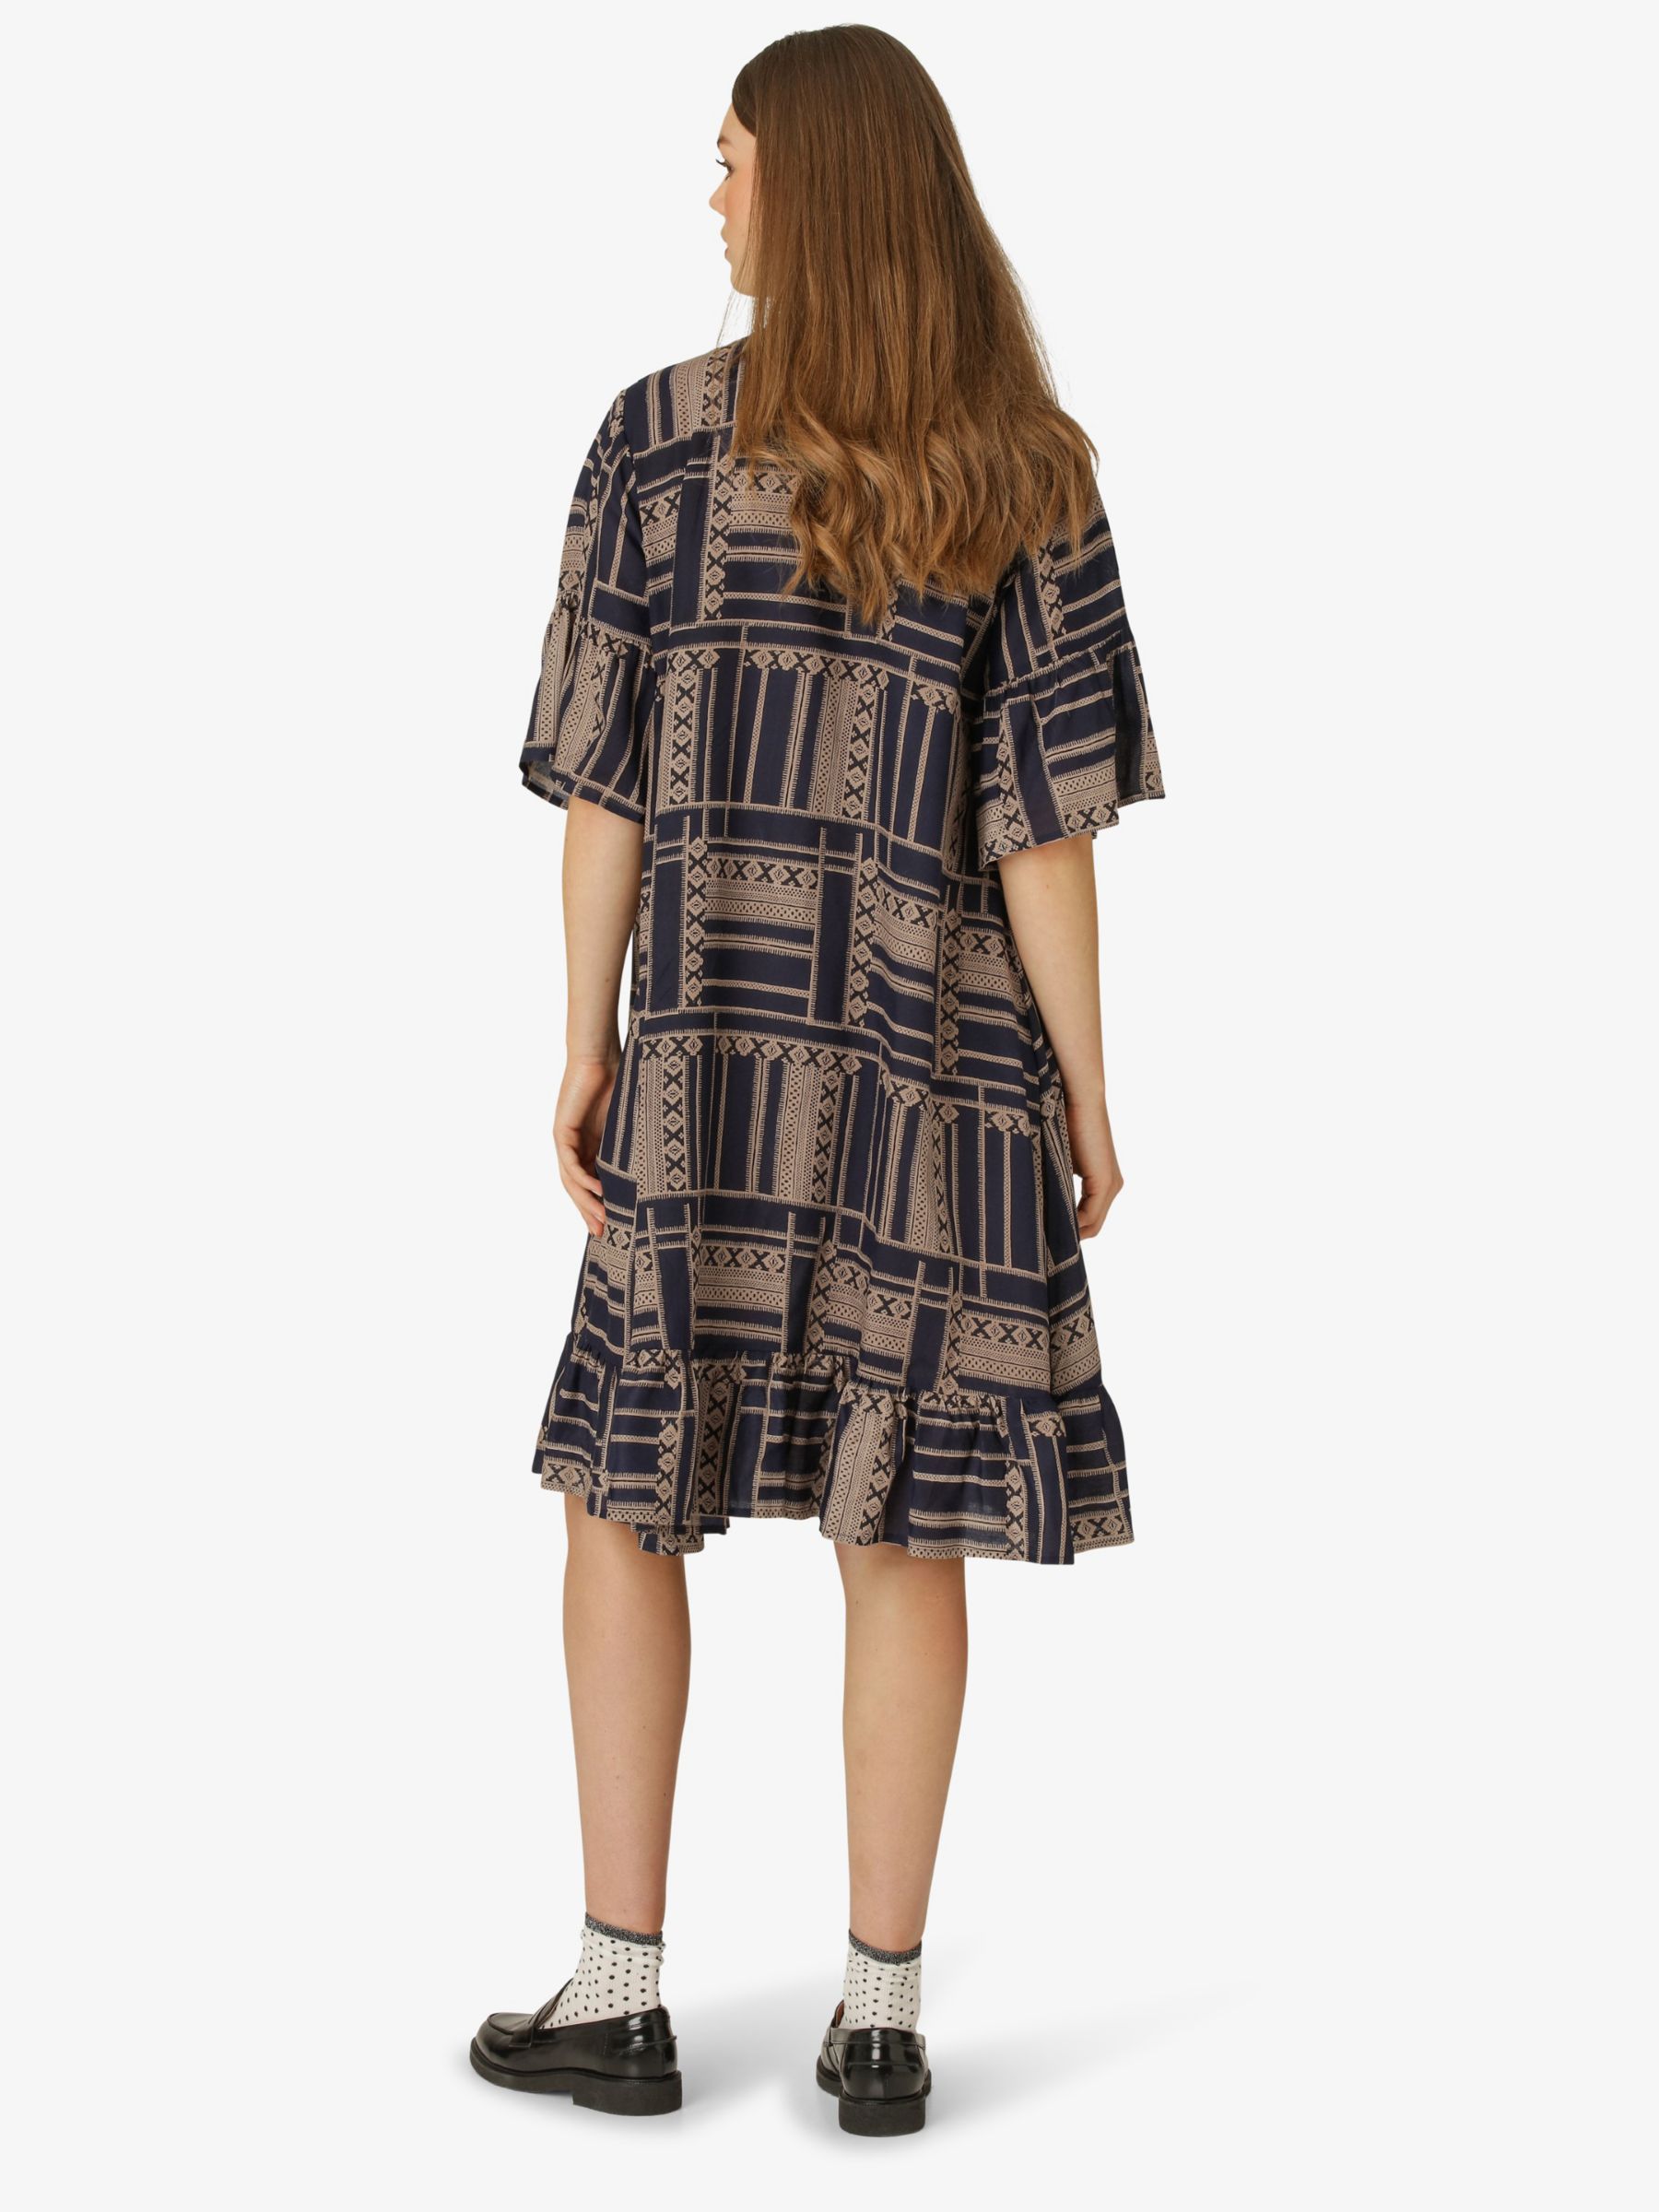 Buy Unmade Copenhagen Unique Short Sleeve Dress Online at johnlewis.com